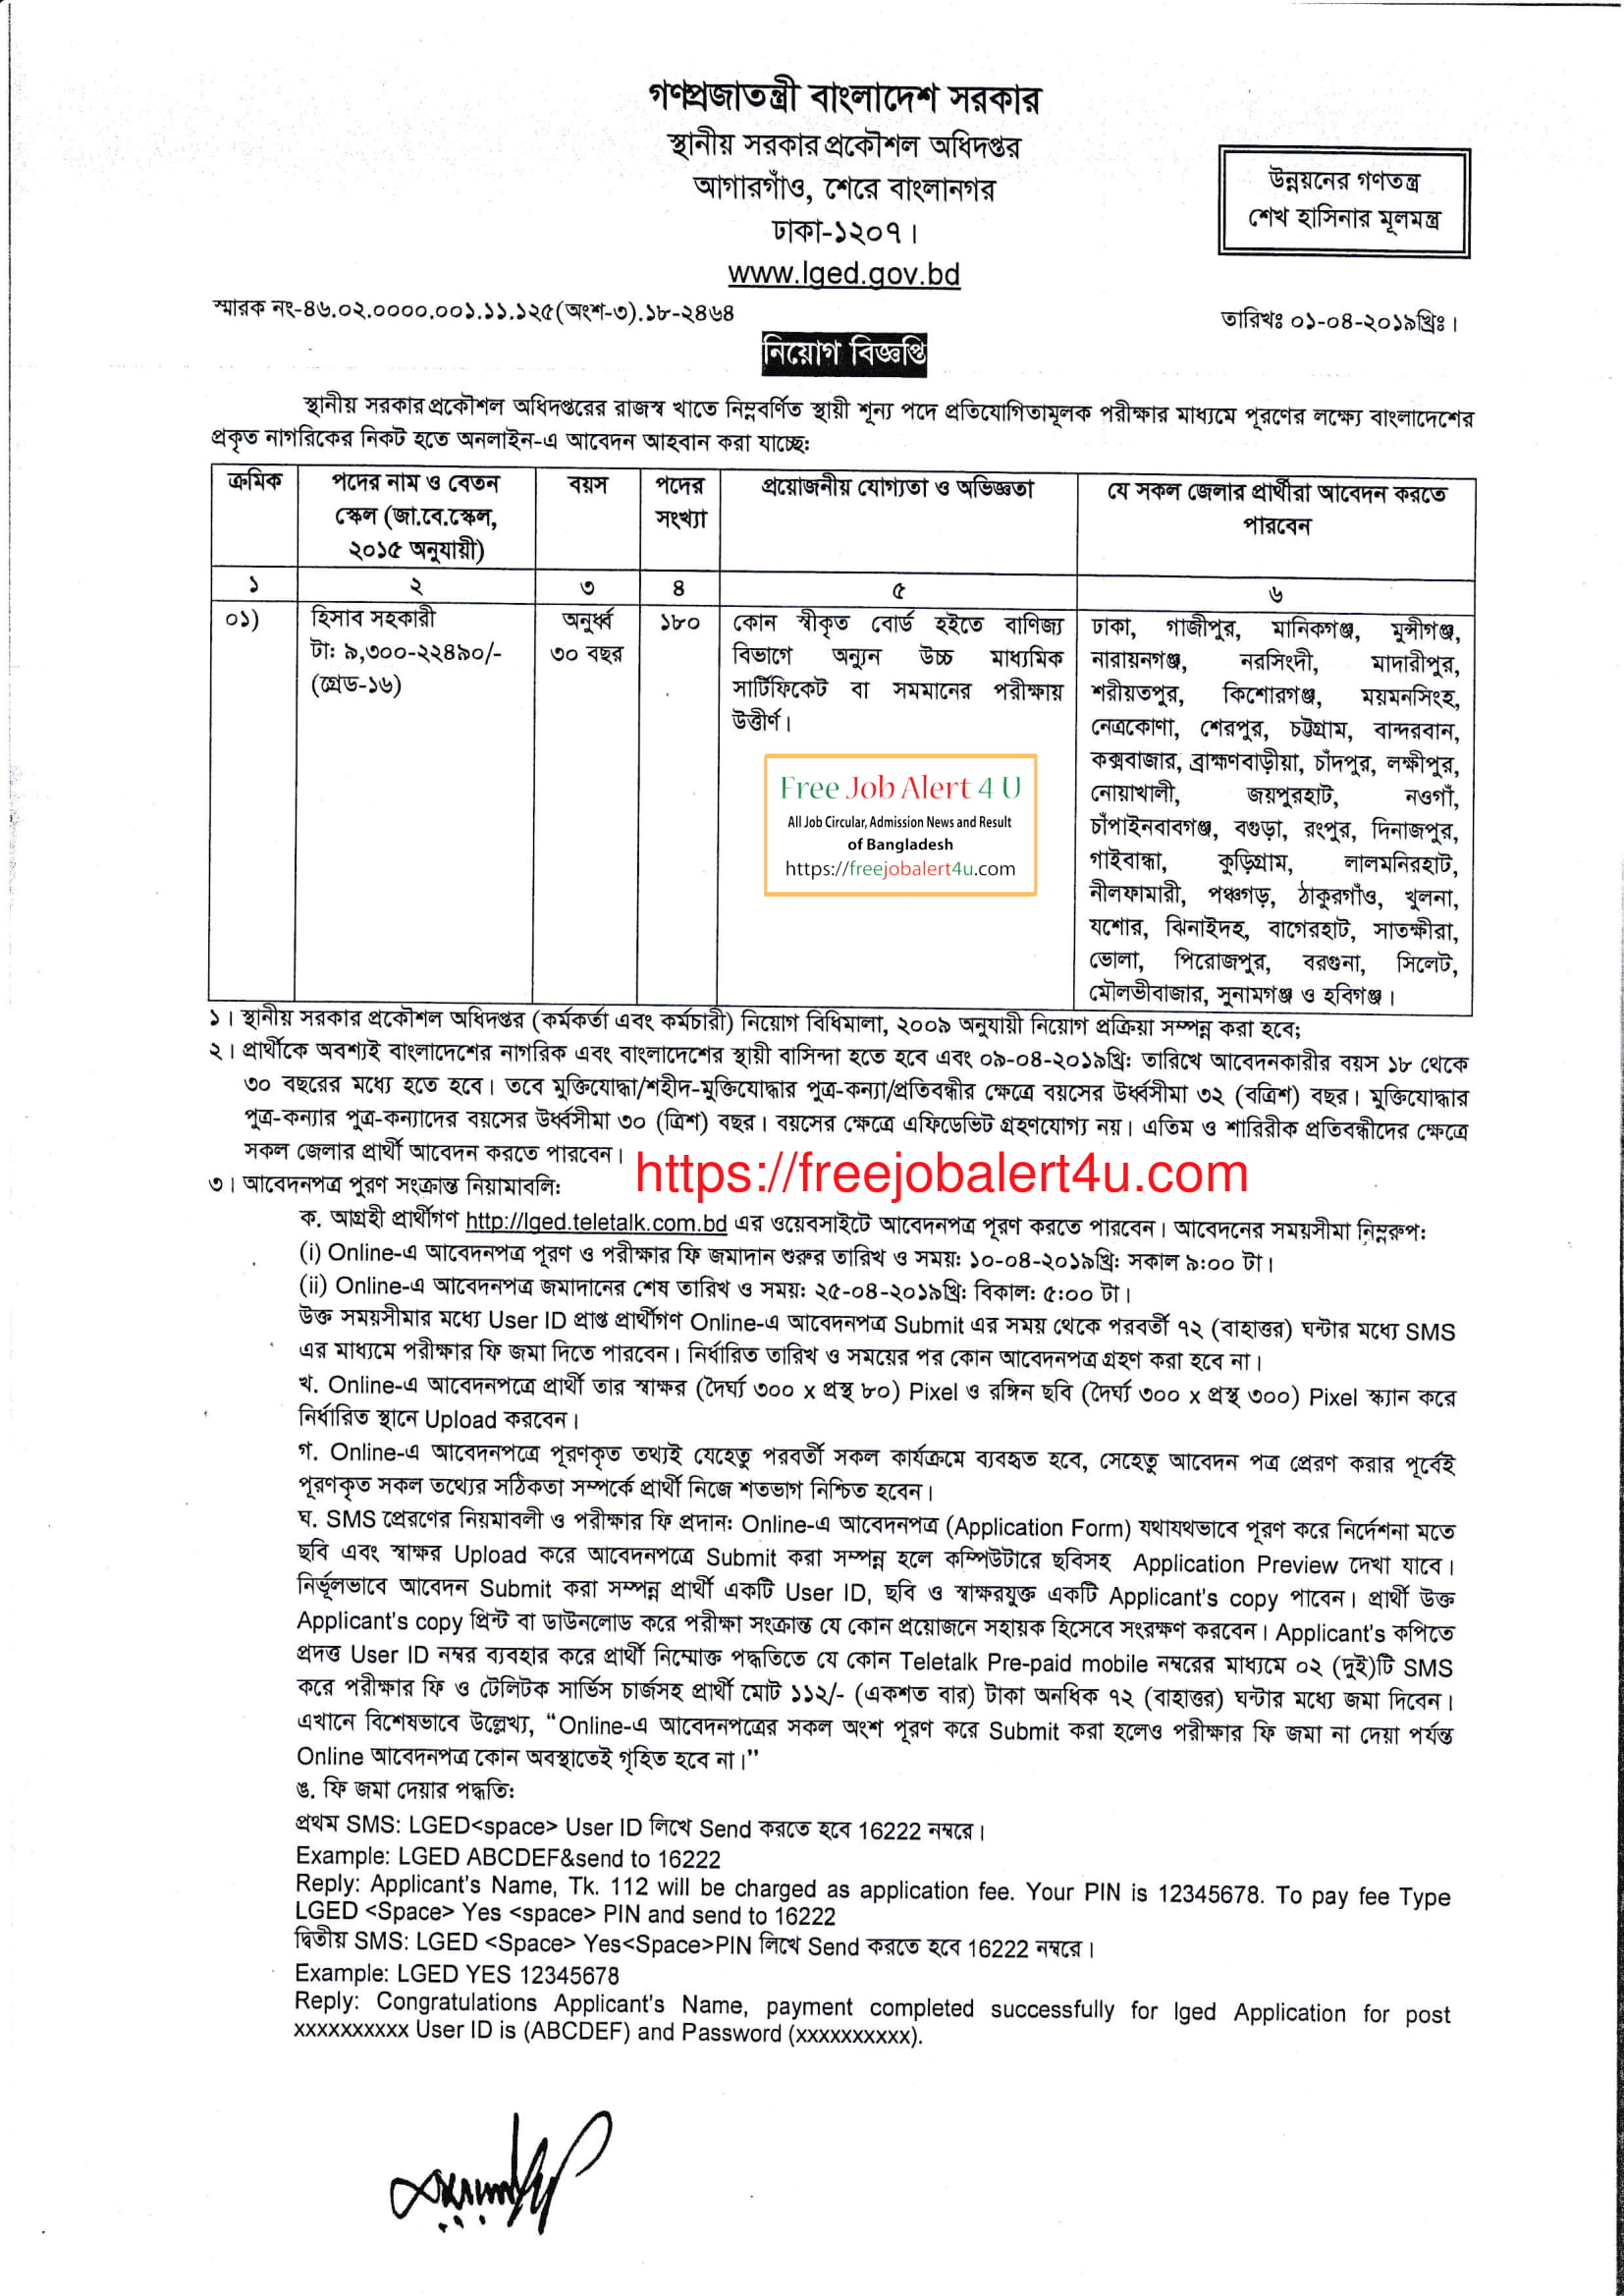 স্থানীয় সরকার প্রকৌশল অধিদপ্তর নিয়োগ বিজ্ঞপ্তি ২০১৯ (Local Government Engineering Department (LGED) Job Circular 2019)